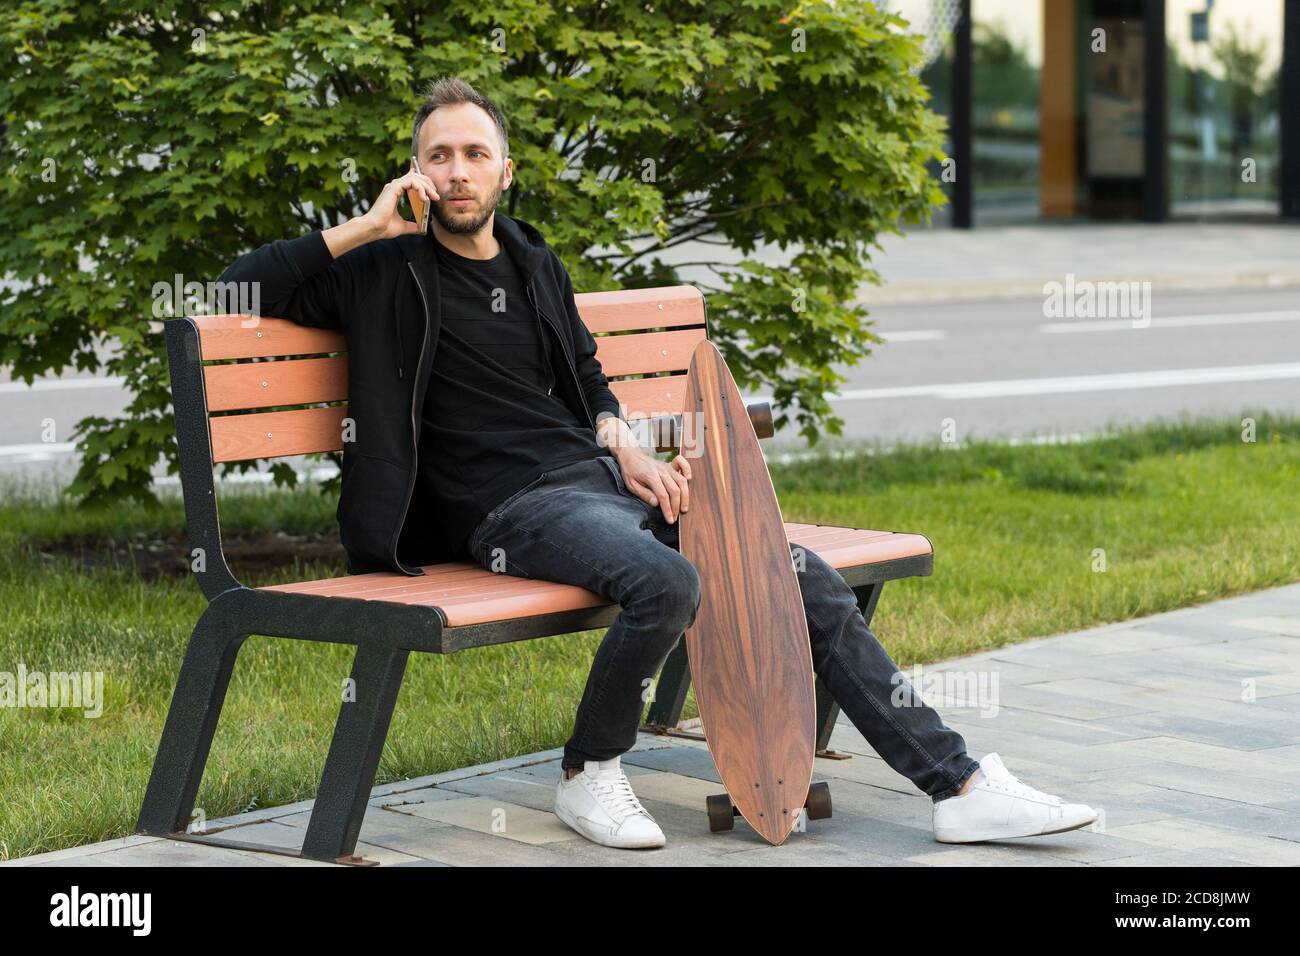 Junger Mann ruht sich aus, sitzt mit Skateboard oder Longboard auf Holzbank, spricht auf Smartphone. Stockfoto